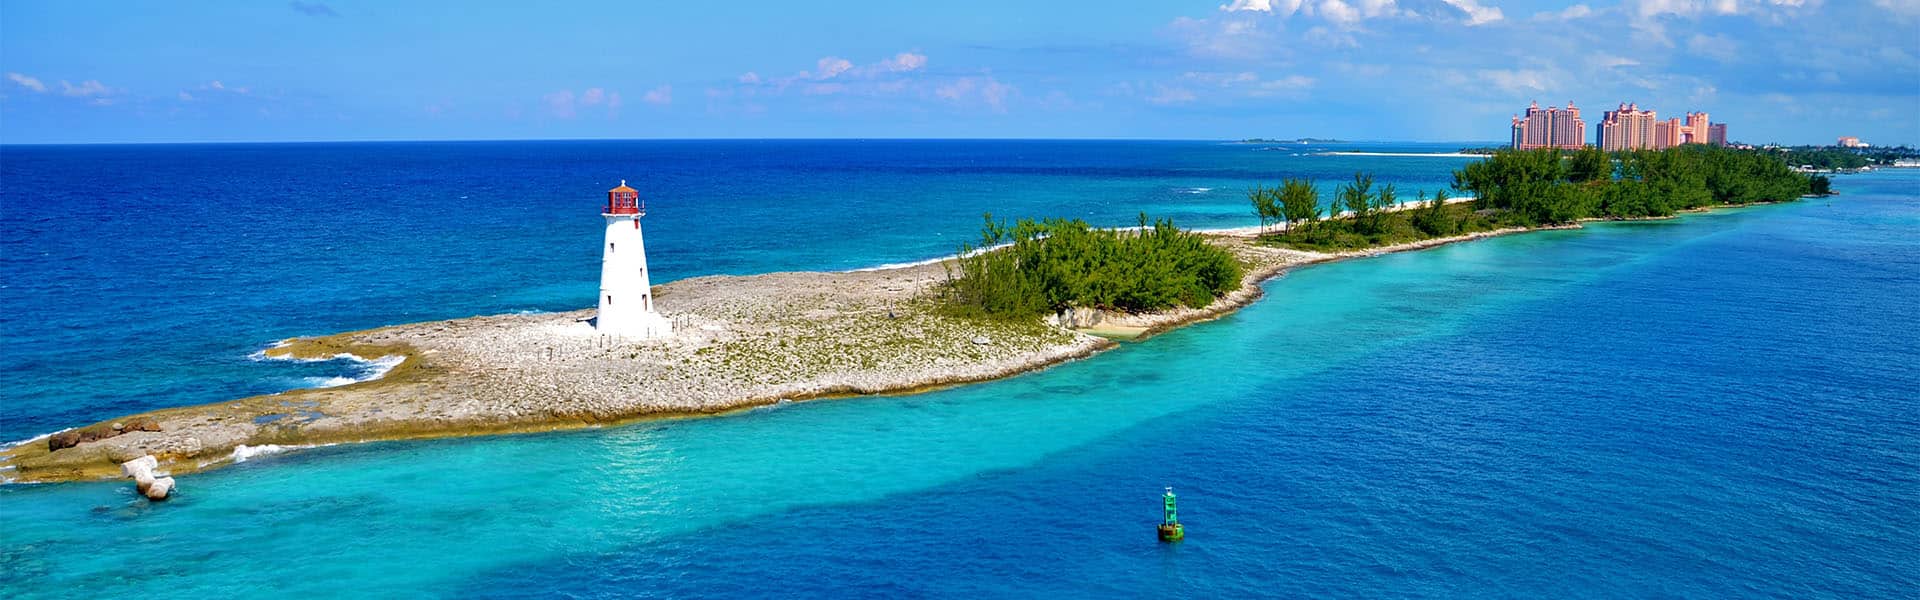 Bahamas: Great Stirrup Cay & Nassau 